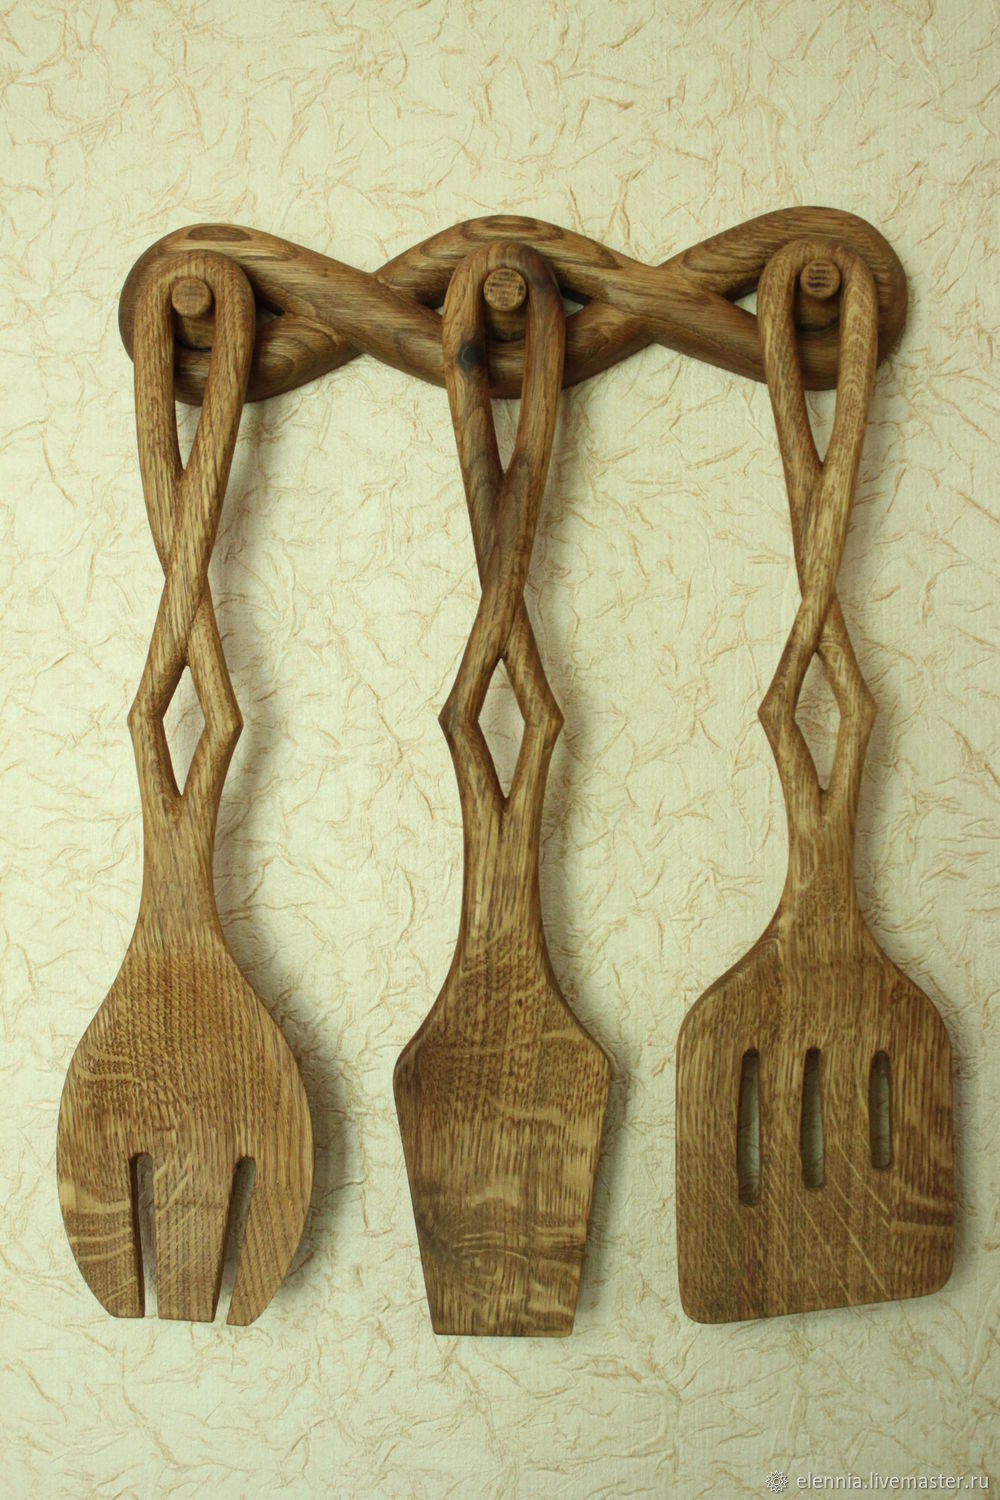 Резной набор деревянных лопаток для кухни. Для настоящего повара